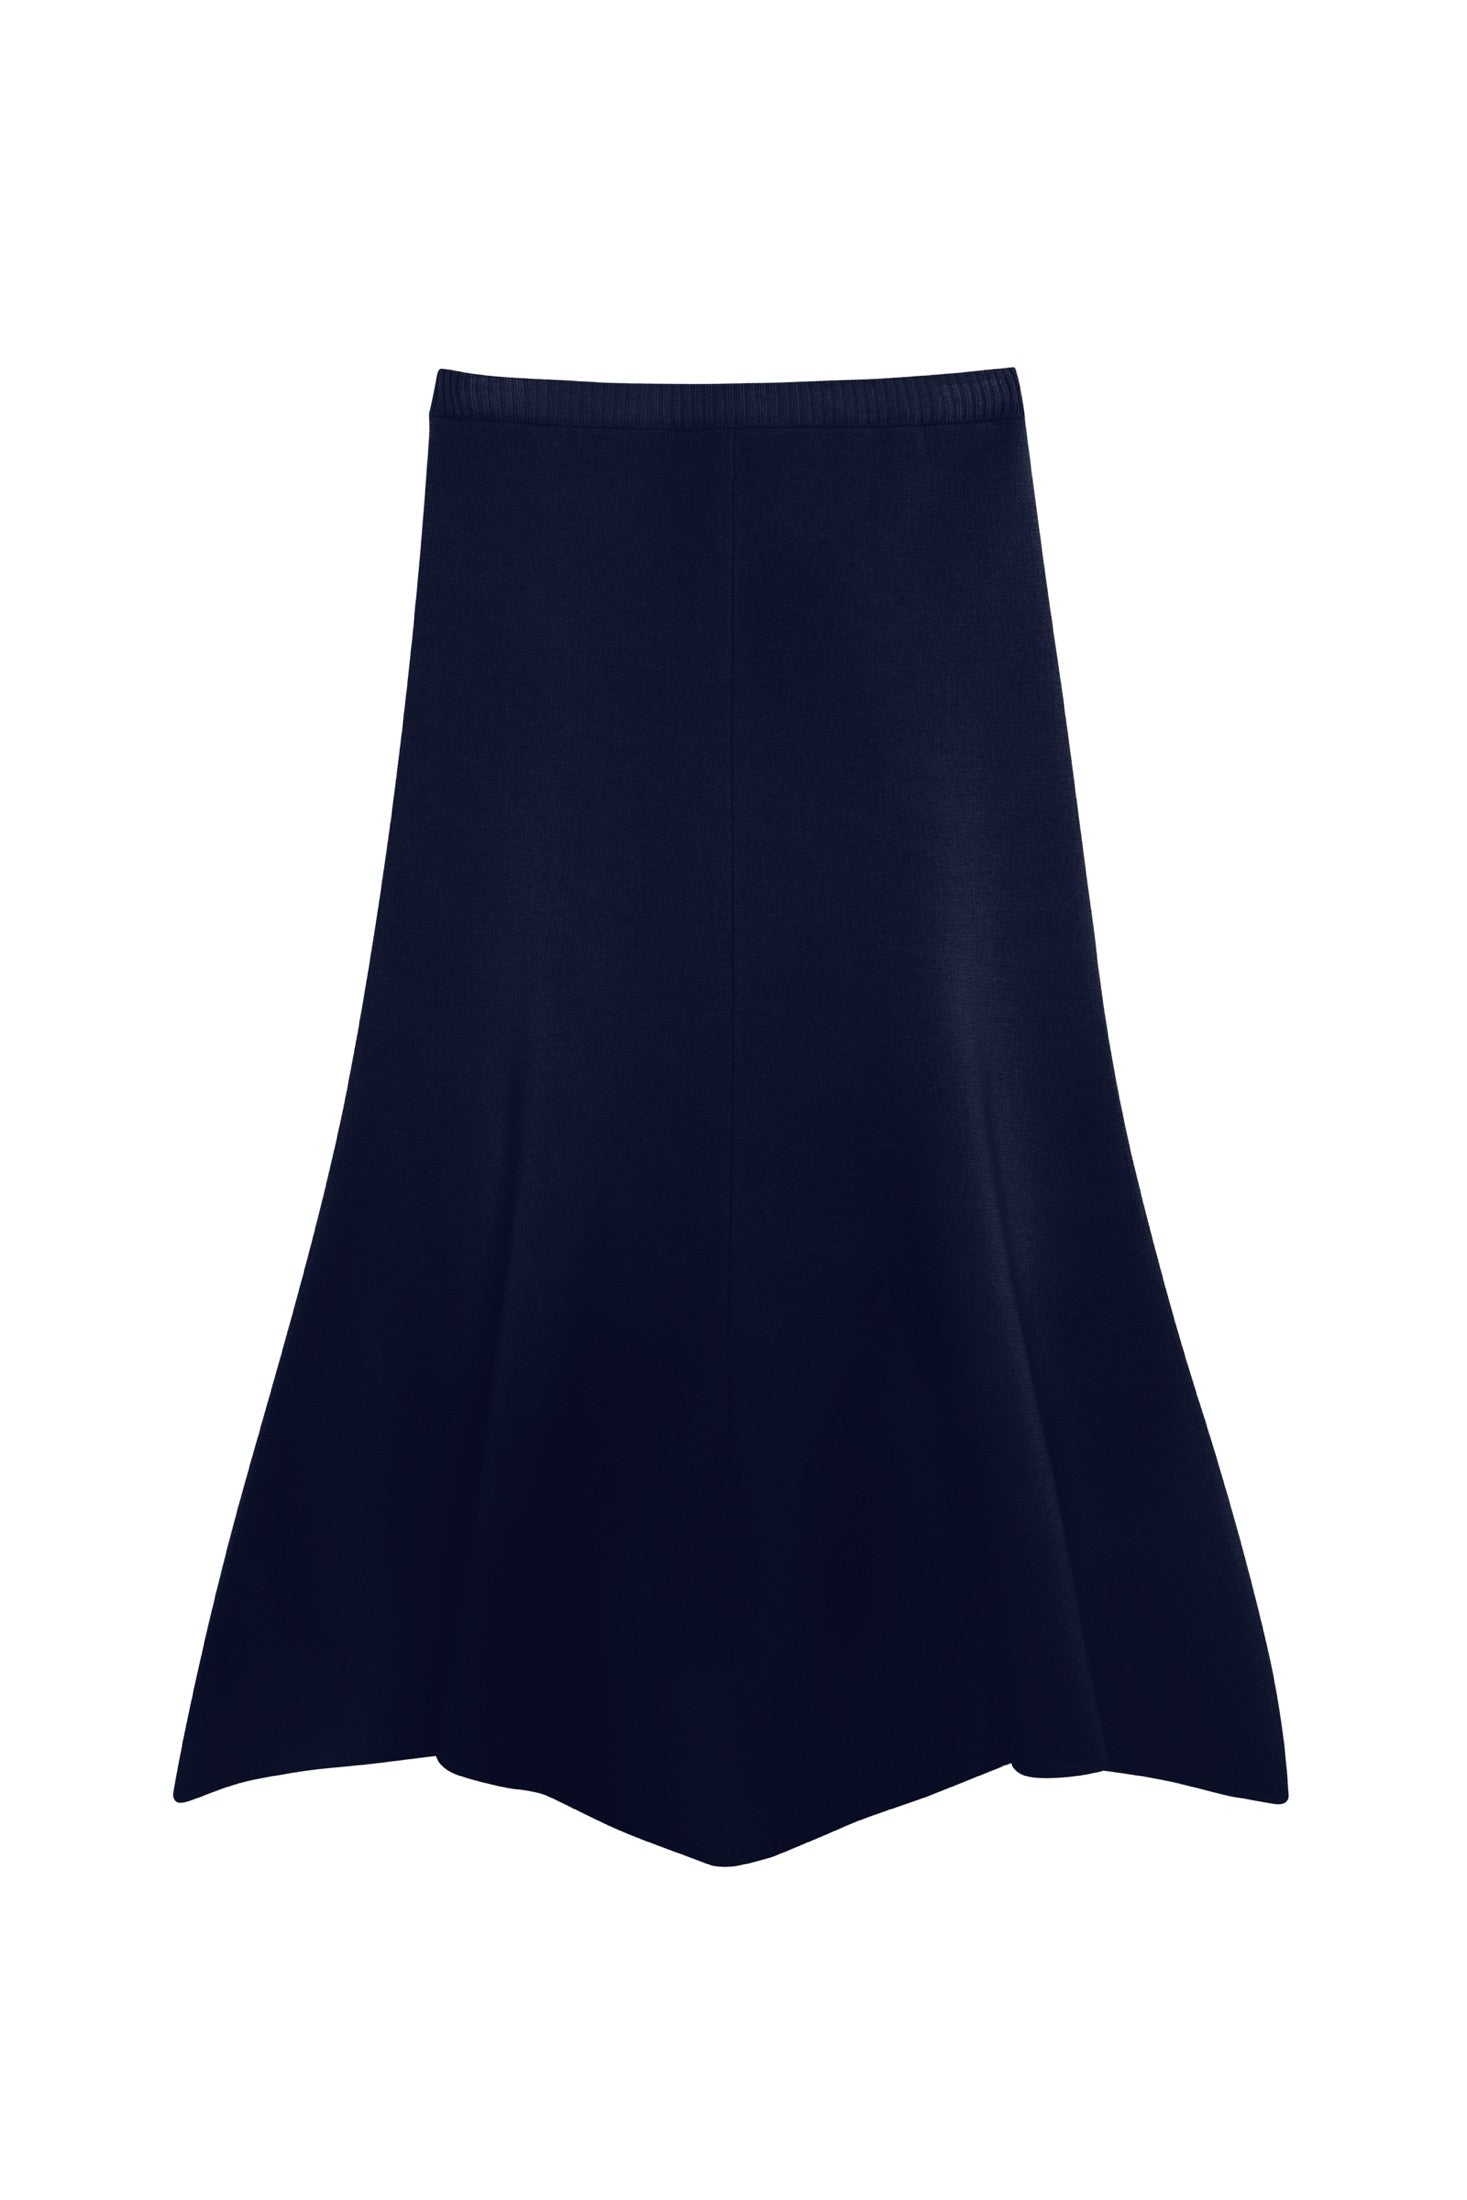 Wide Merino Skirt